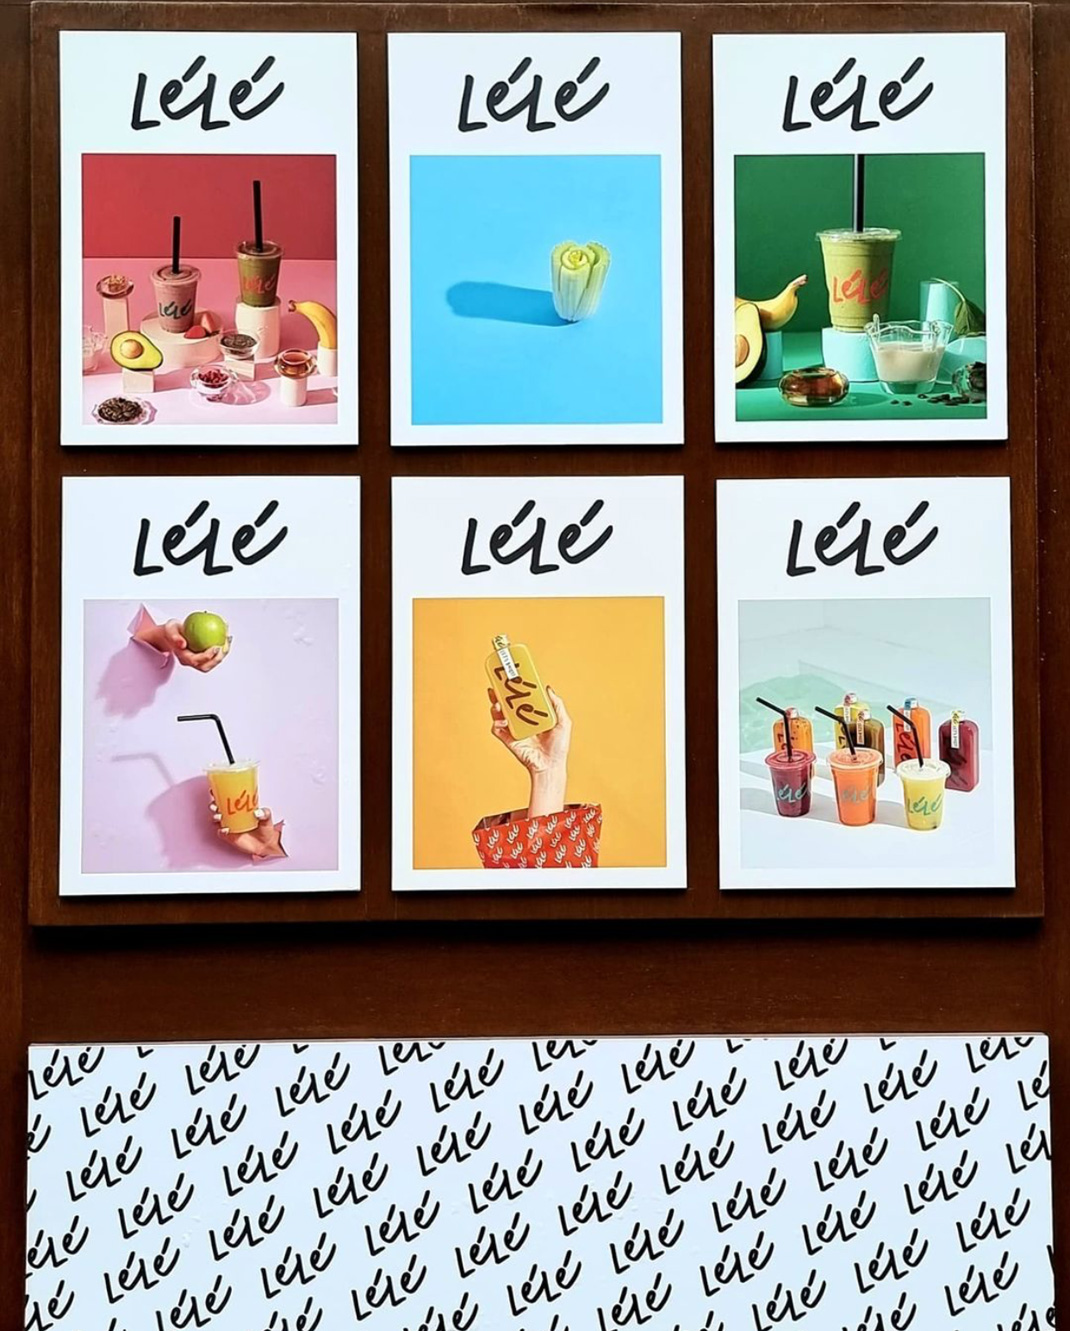 乐乐果汁吧 Lele Juice Bar 泰国 饮品店 果汁 字体设计 海报设计 logo设计 vi设计 空间设计